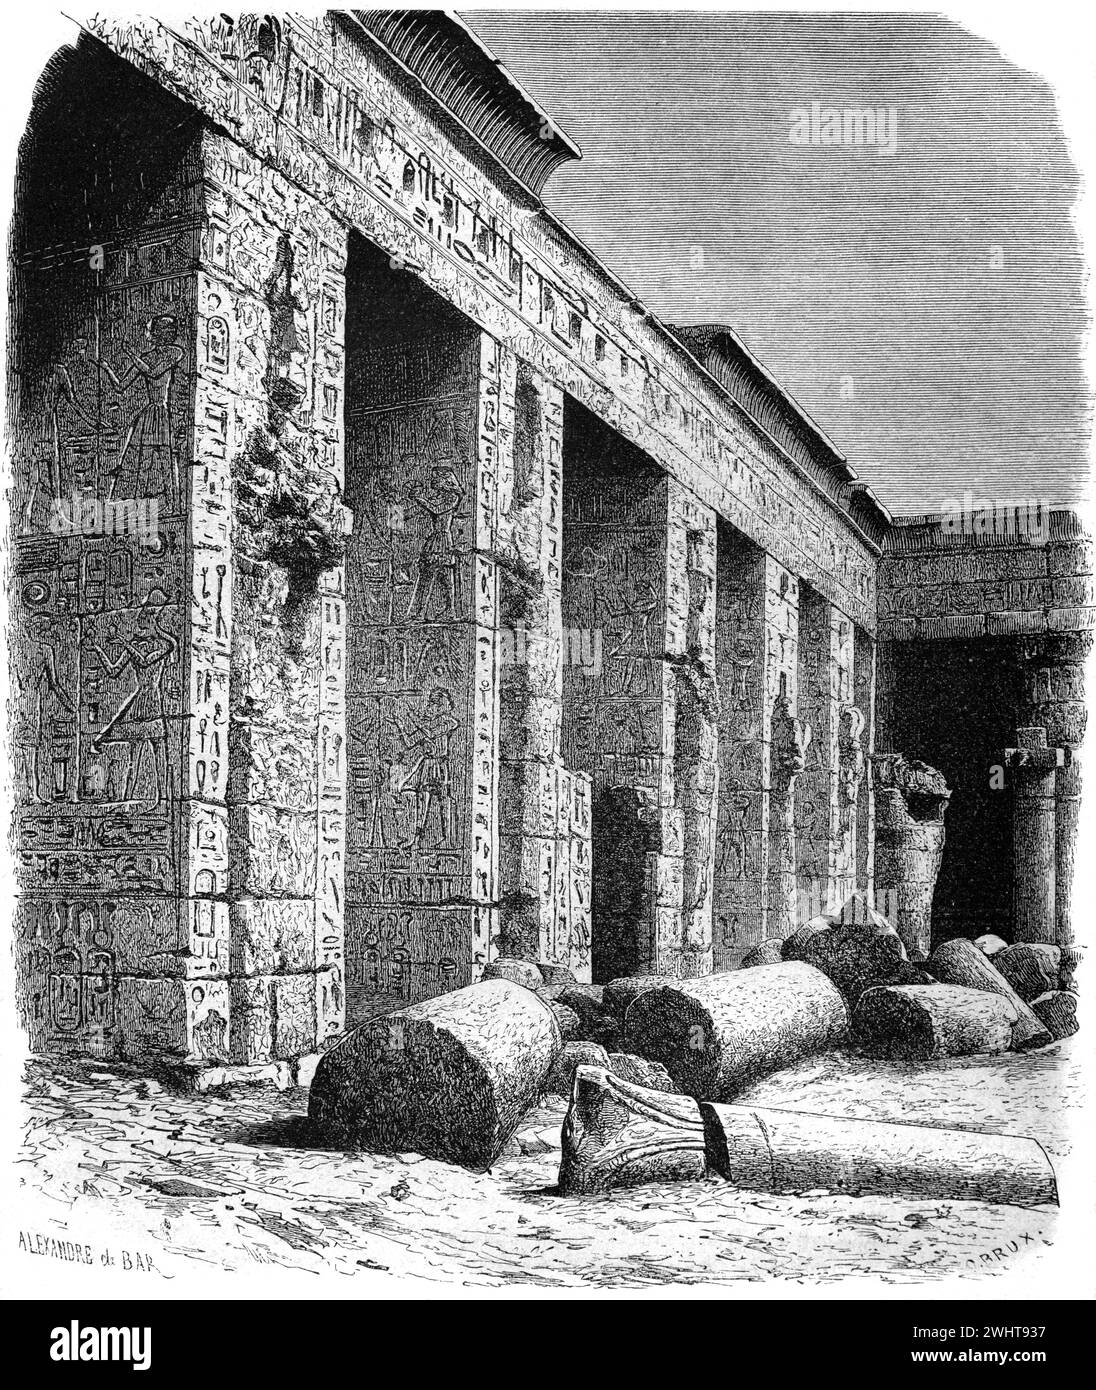 Cour intérieure avec colonnes massives de pierre de Medinet Habu, Temple mortuaire de Ramsès II (c9ème av. J.-C.) Egypte. Gravure vintage ou historique ou Illustration 1863 Banque D'Images